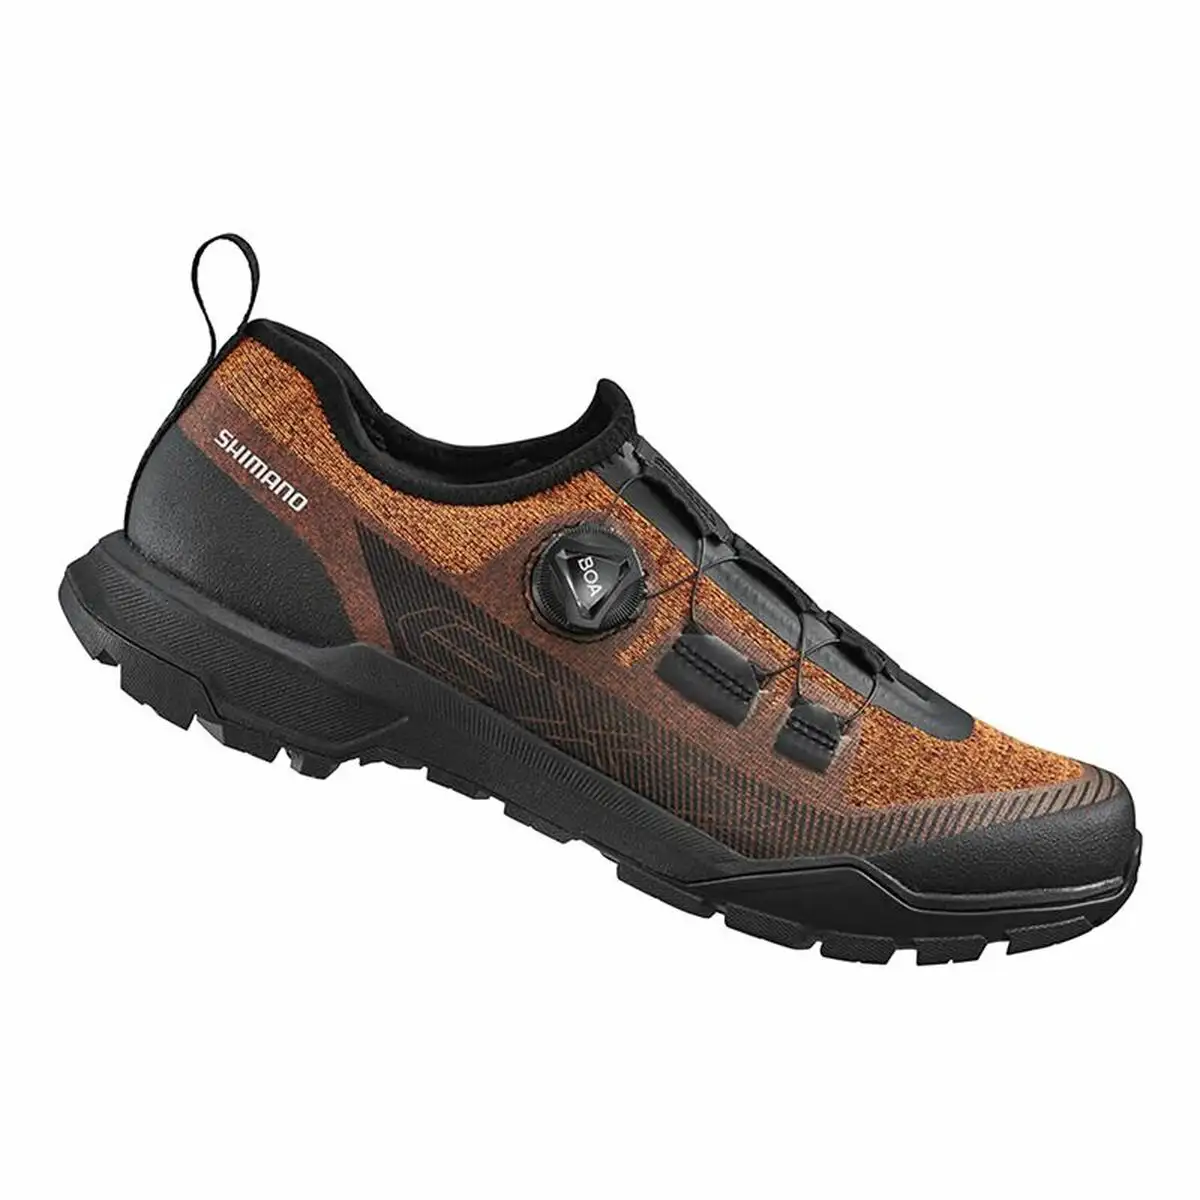 Chaussures de cyclisme shimano ex7 orange_6587. DIAYTAR SENEGAL - Votre Destination pour un Shopping Réfléchi. Découvrez notre gamme variée et choisissez des produits qui correspondent à vos valeurs et à votre style de vie.